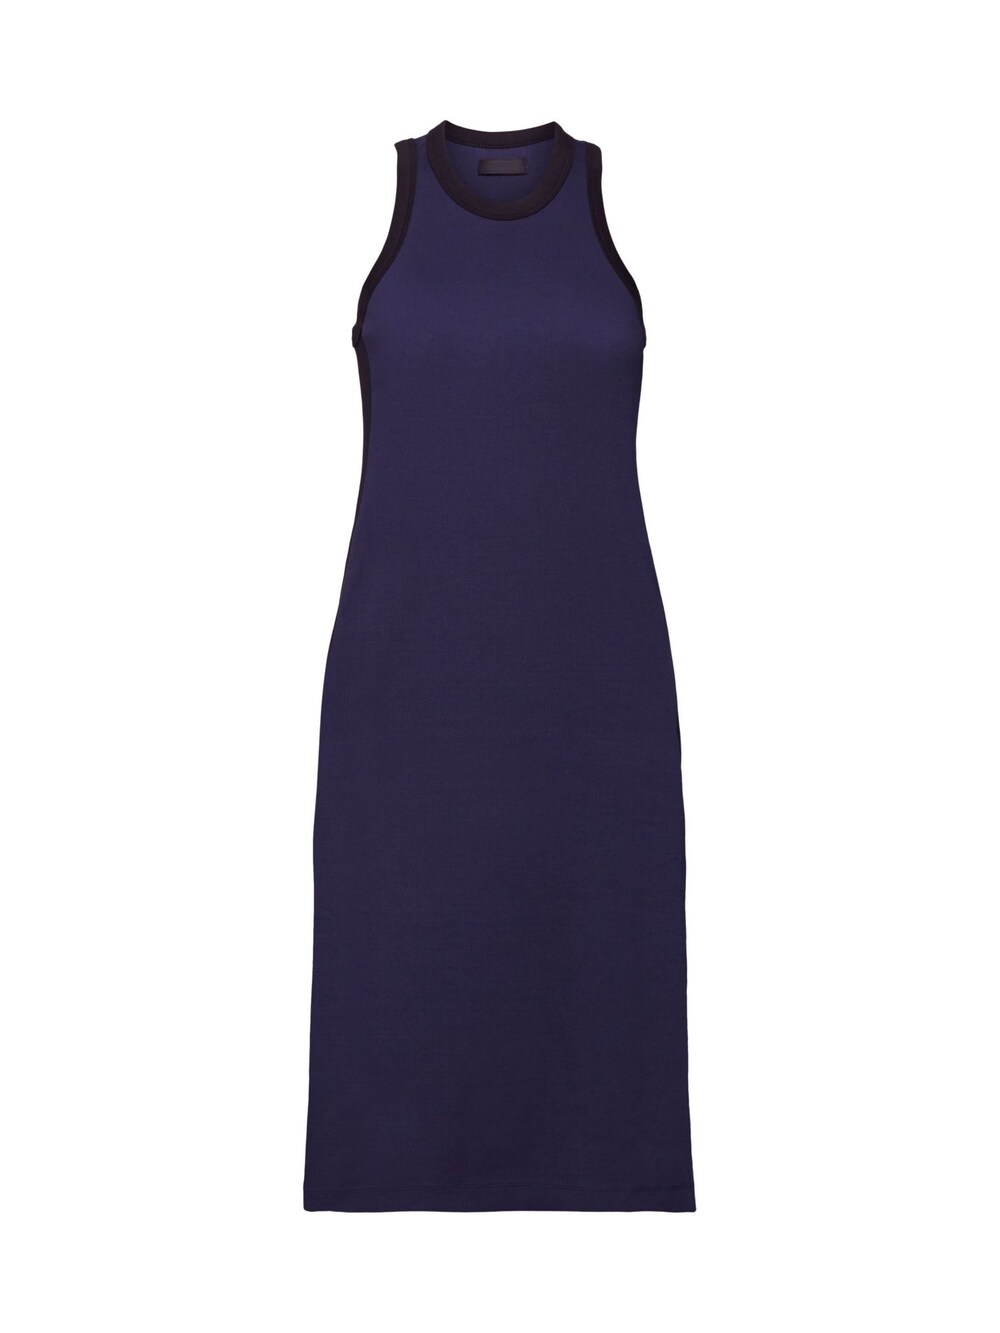 Вязанное платье Esprit, темно-синий вязанное платье esprit карамель